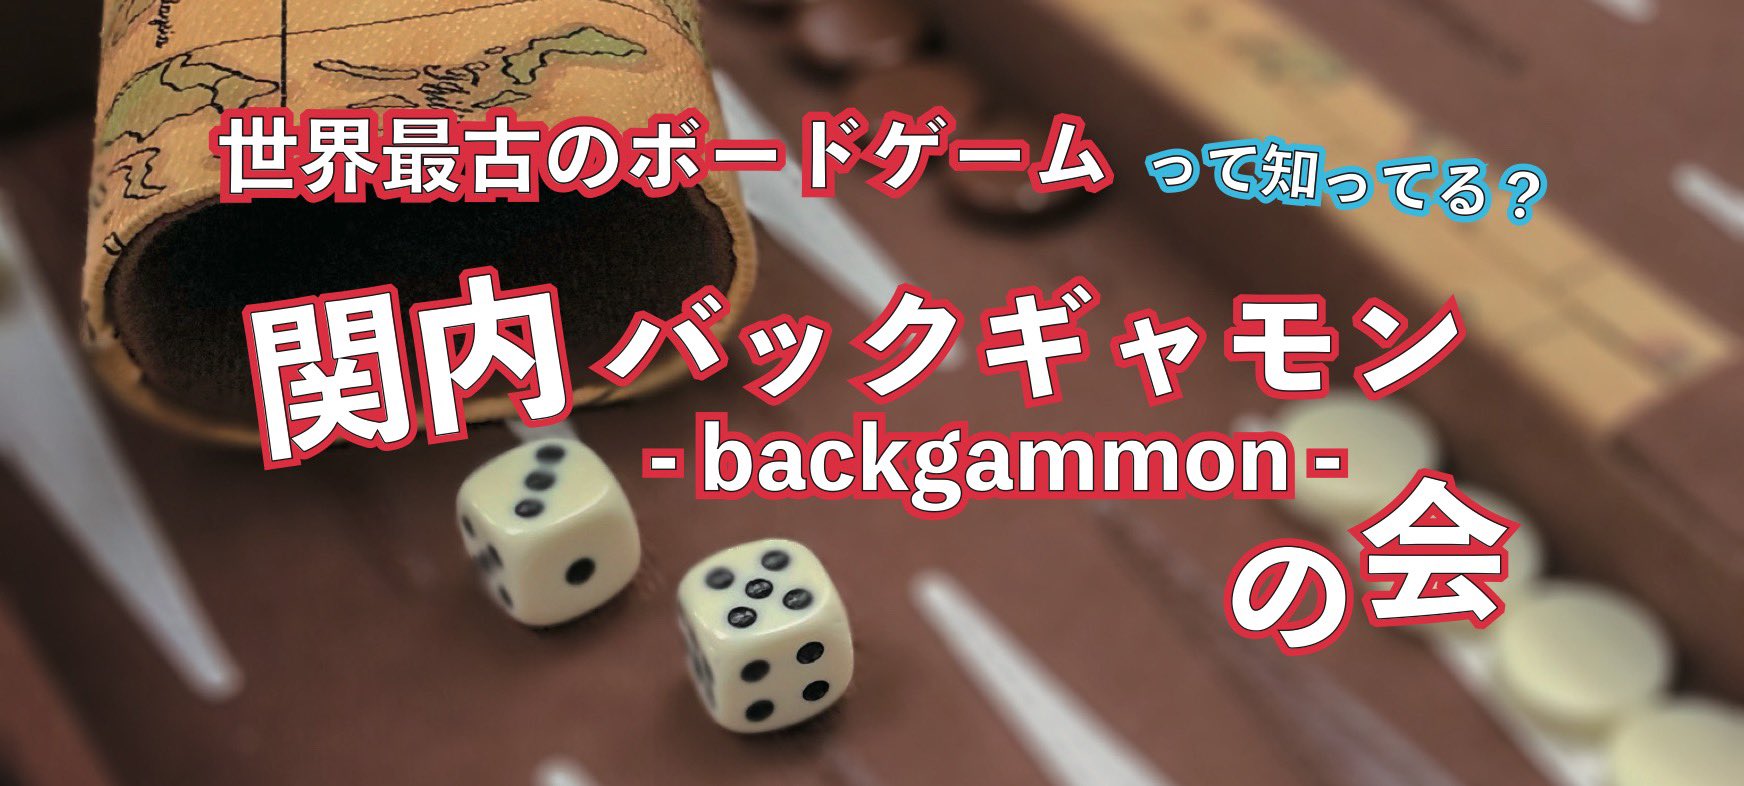 関内バックギャモンの会 Kannai Backgammon Club 告知 関内バックギャモンの会 7 3 日 9 00 12 00 なか区民活動センター 参加無料 投げ銭可 ルールのわからない初心者でも 経験者の方でも大歓迎 おしゃべりしながら楽しく一緒に遊びましょう